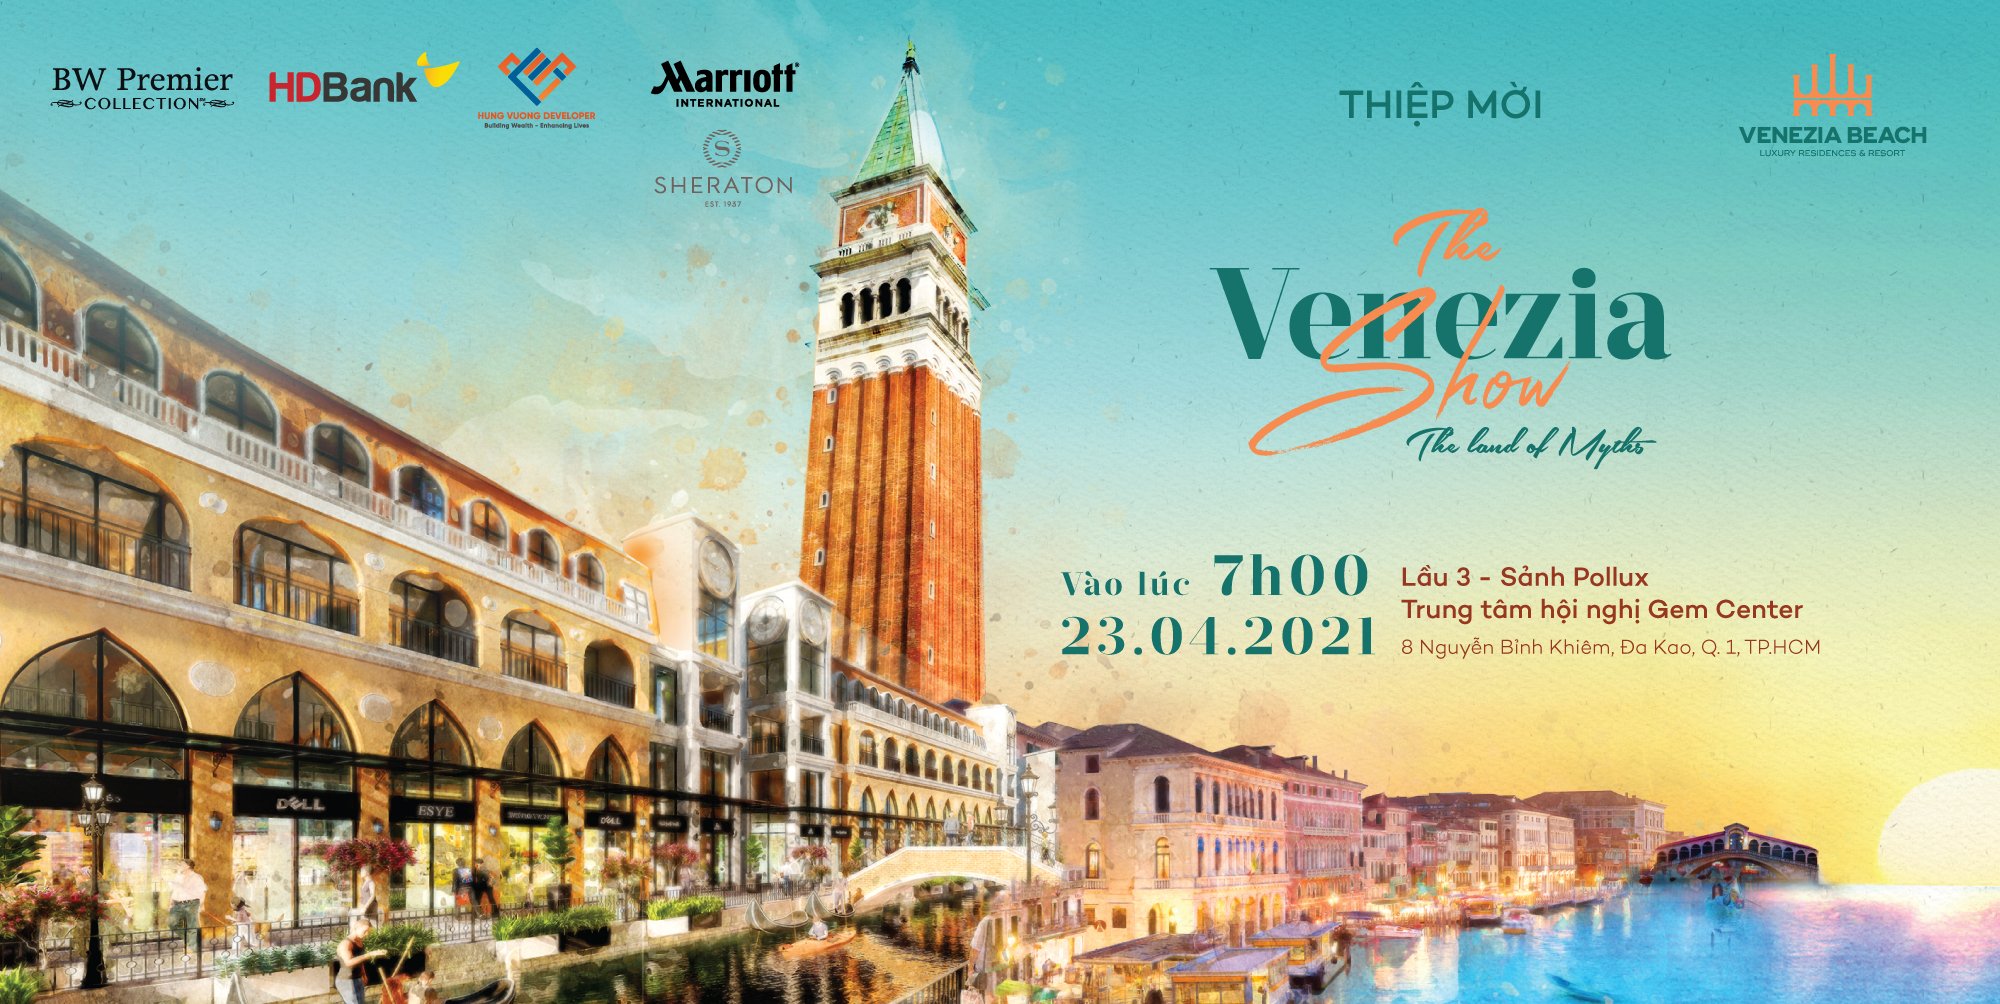 Thiệp mời buổi lễ Kick - Off dự án Venezia Beach Bình Thuận